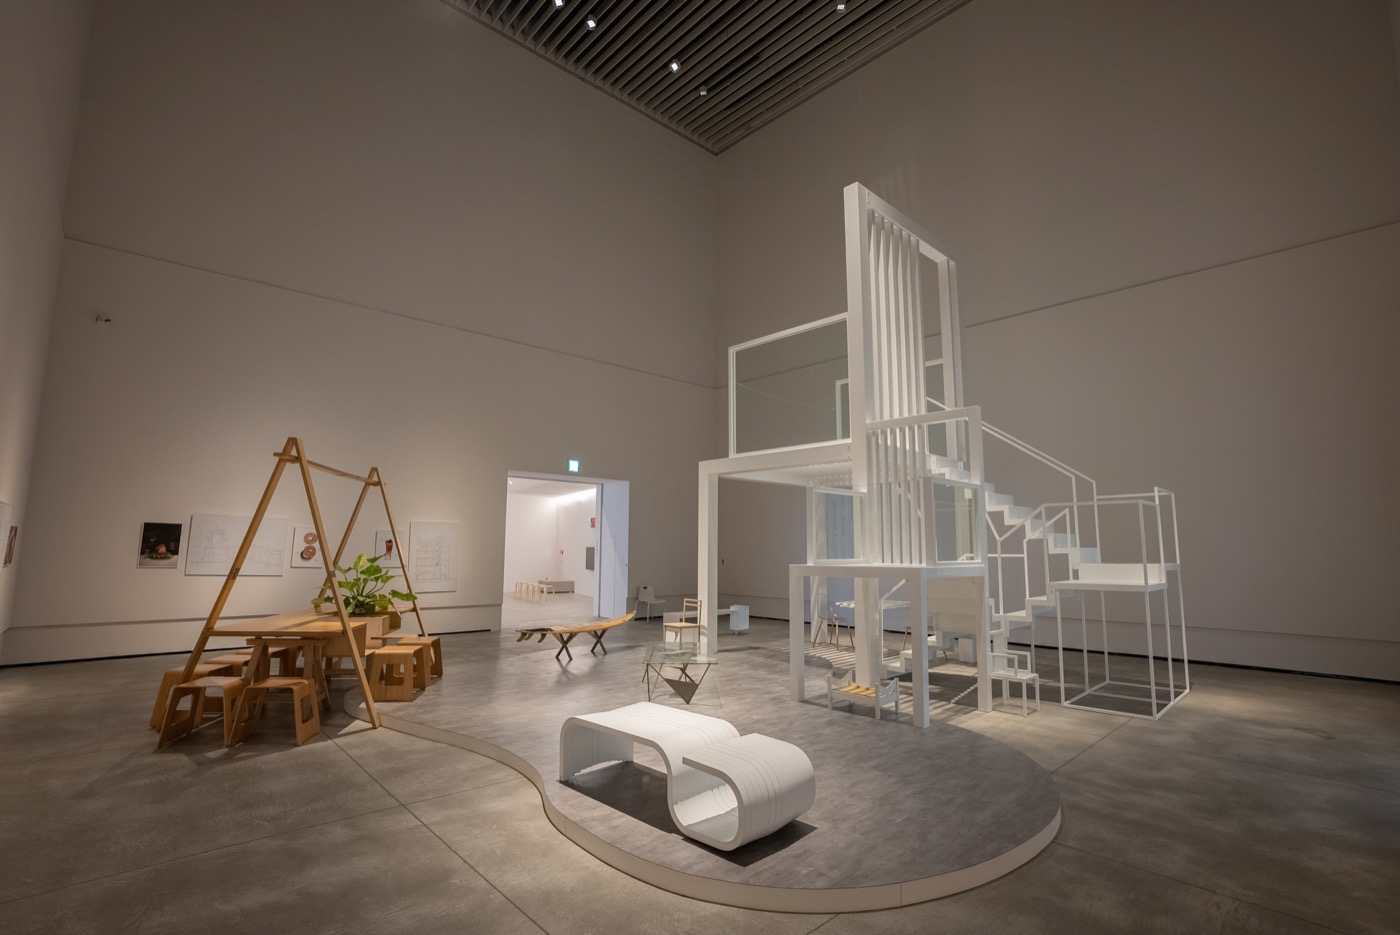 2022臺南建築三年展 以盛宴為名的「XL- @ B gallery→Banquet of Architecture」展間之最後高潮，就是在挑高空間中所設立了宛如「三位一體之寶座（Trinity Throne）」的大尺度椅子，以及透過臺南在地經典美食及創作料理來仿擬建築的另類展出